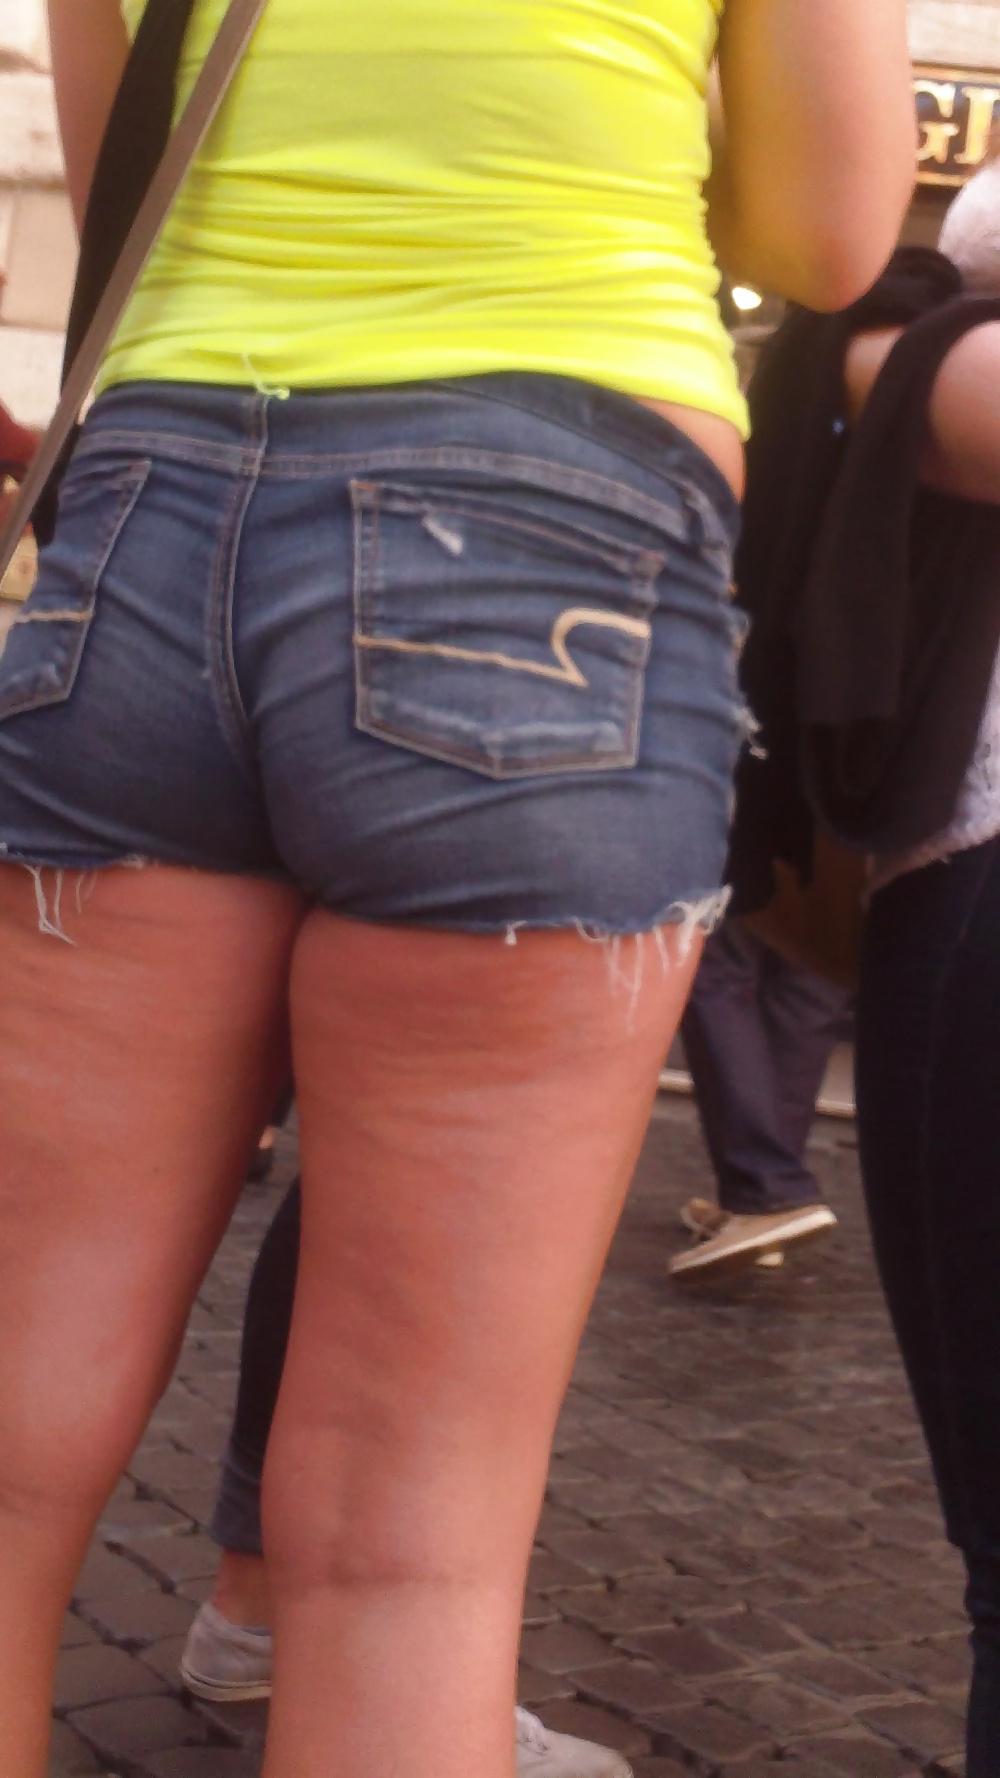 Popular teen girls ass & butt in jeans Part 6 #32010104